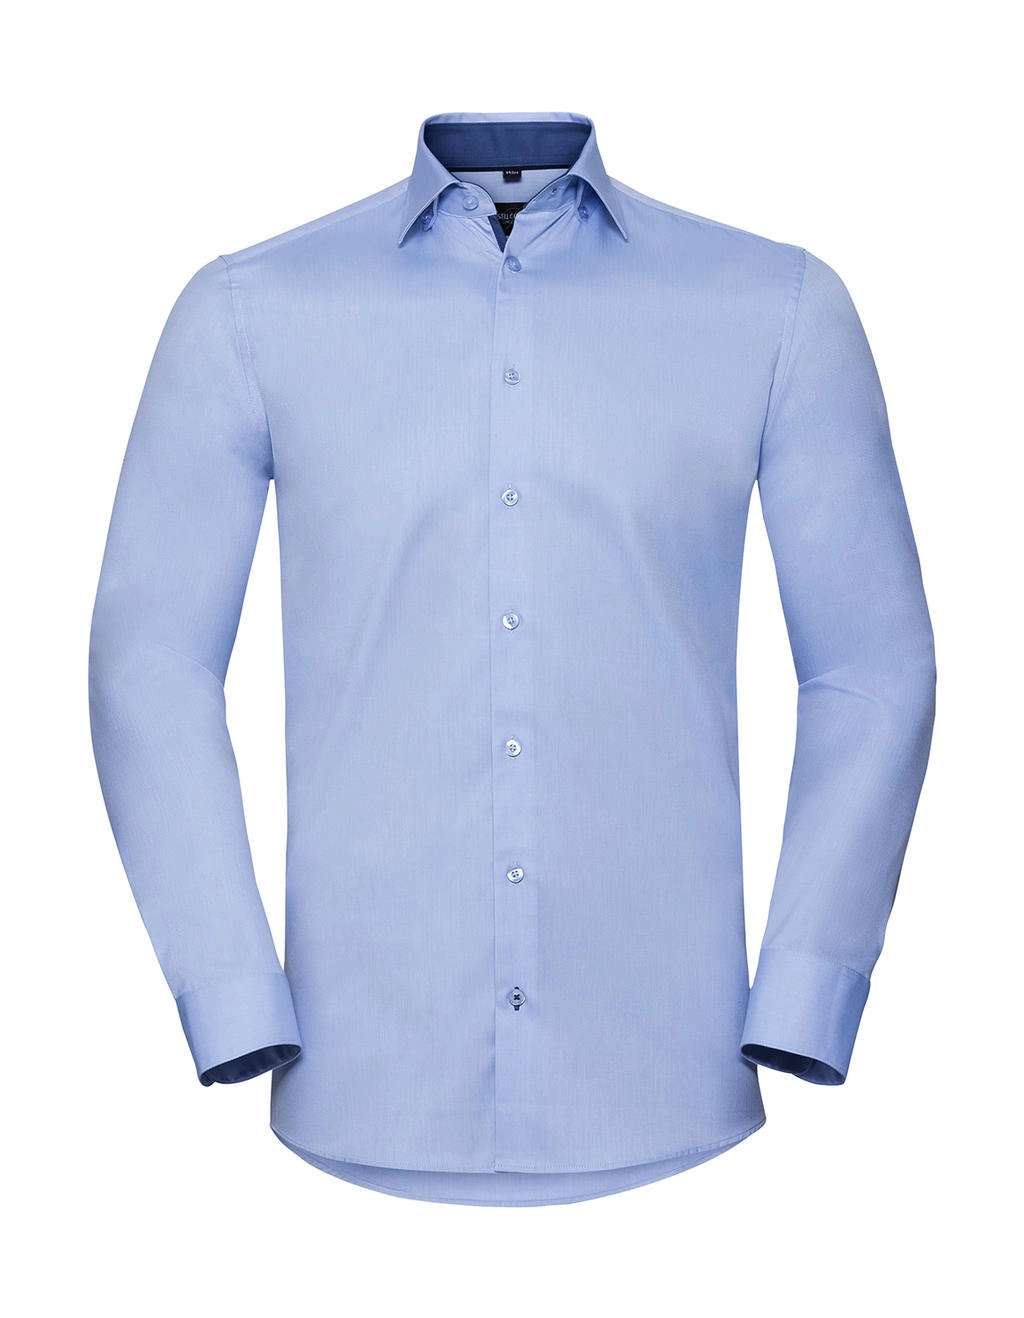 Tailored Contrast Herringbone Shirt LS zum Besticken und Bedrucken in der Farbe Light Blue/Mid Blue/Bright Navy mit Ihren Logo, Schriftzug oder Motiv.